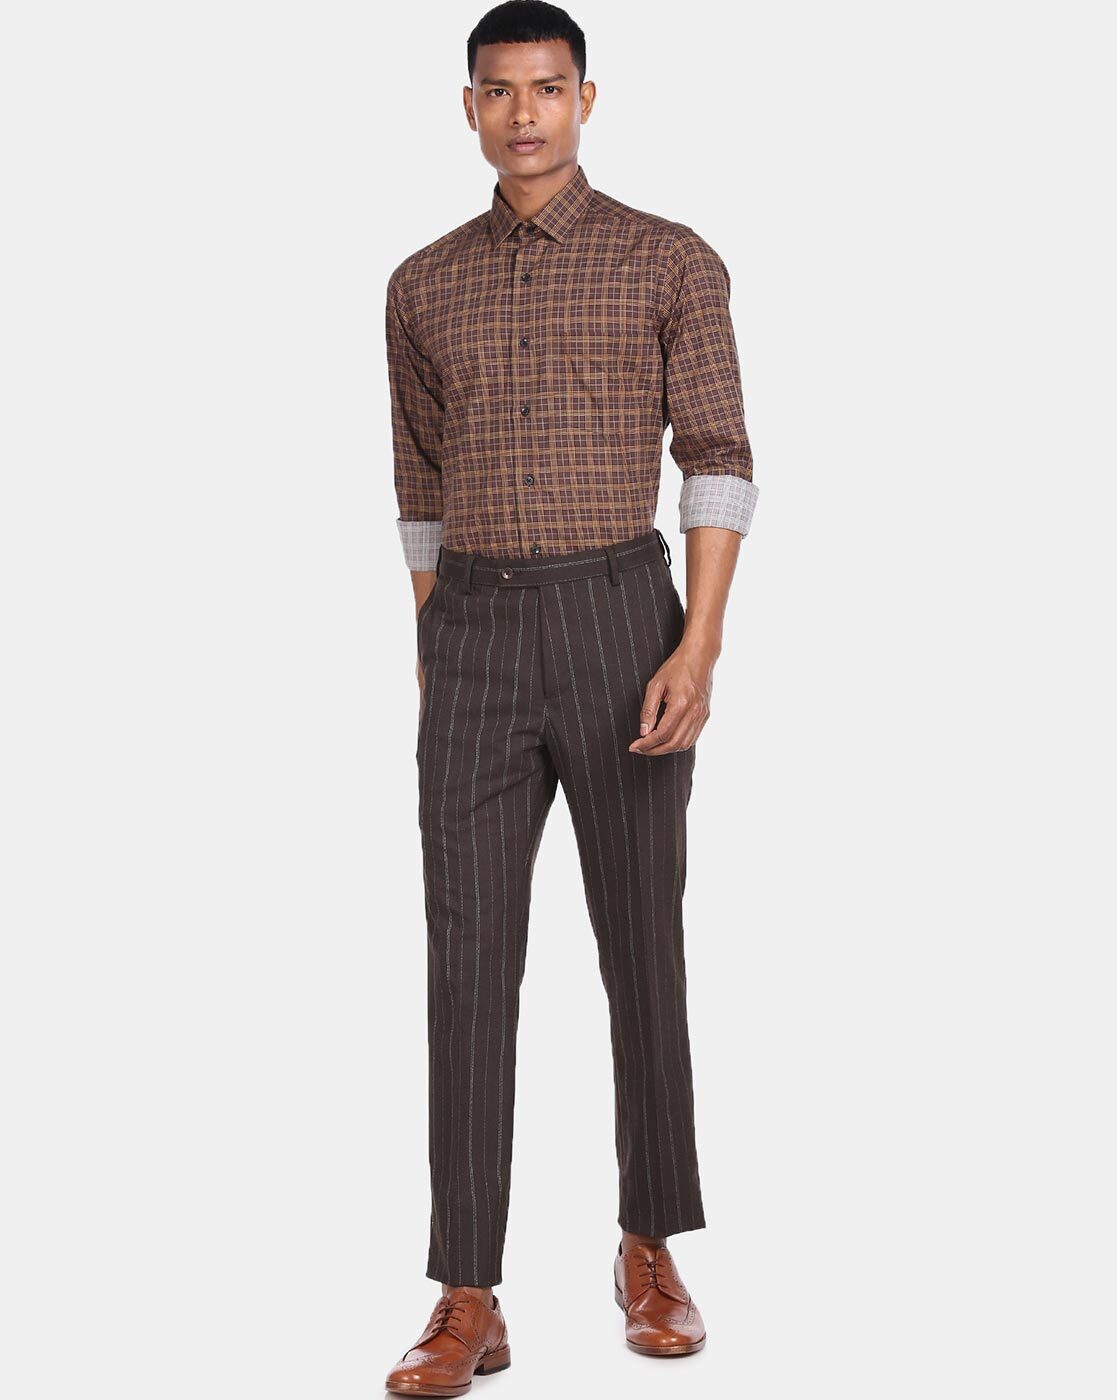 The New Spring Glen Plaid Suit 3 Ways – Men's Style Pro | Men's Style Blog  & Shop